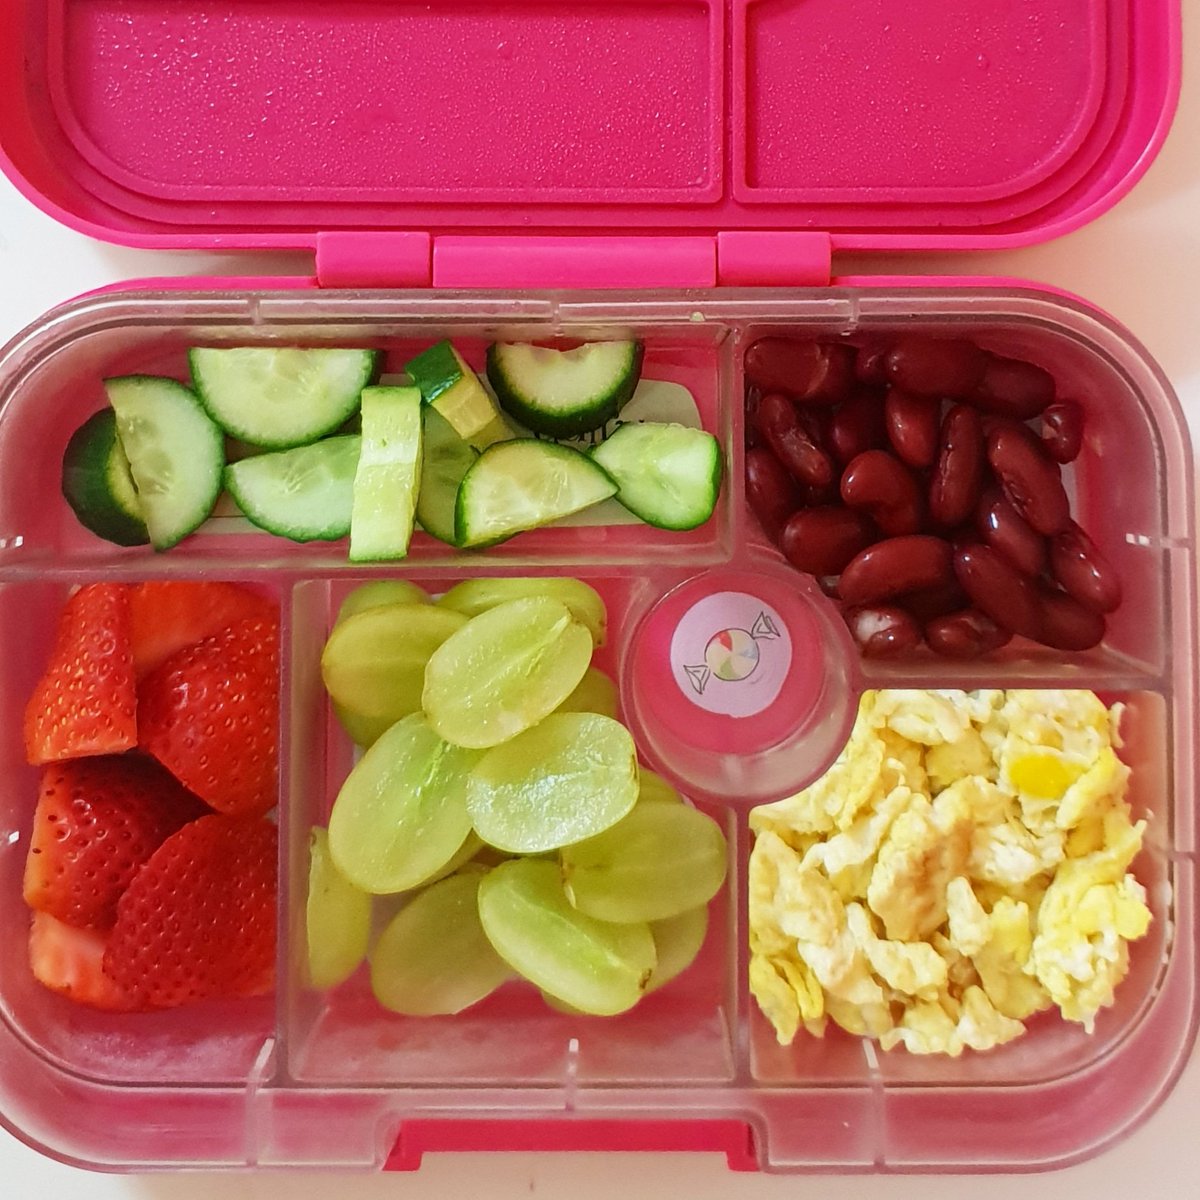 غداء غني بالبروتين لليوم 🍓🍳
High protein lunch box for the school today 

#علبة_غدائنا_الصحية 
#healthyschoollunch #schoollunch #yumbox #yumboxlunch